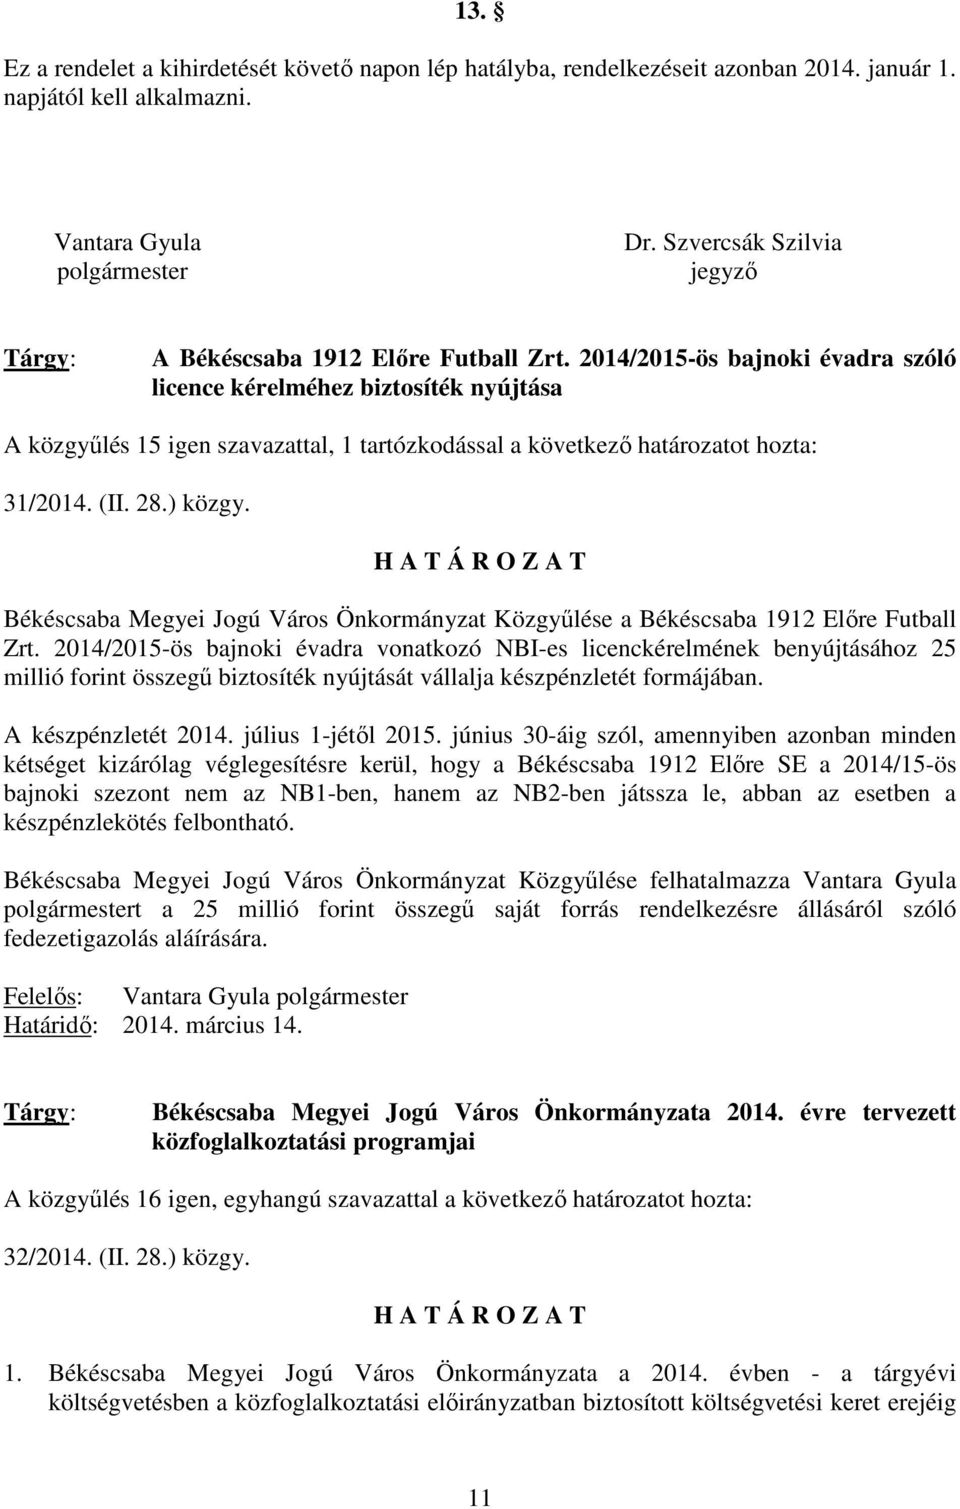 2014/2015-ös bajnoki évadra szóló licence kérelméhez biztosíték nyújtása A közgyőlés 15 igen szavazattal, 1 tartózkodással a következı határozatot hozta: 31/2014. (II. 28.) közgy.